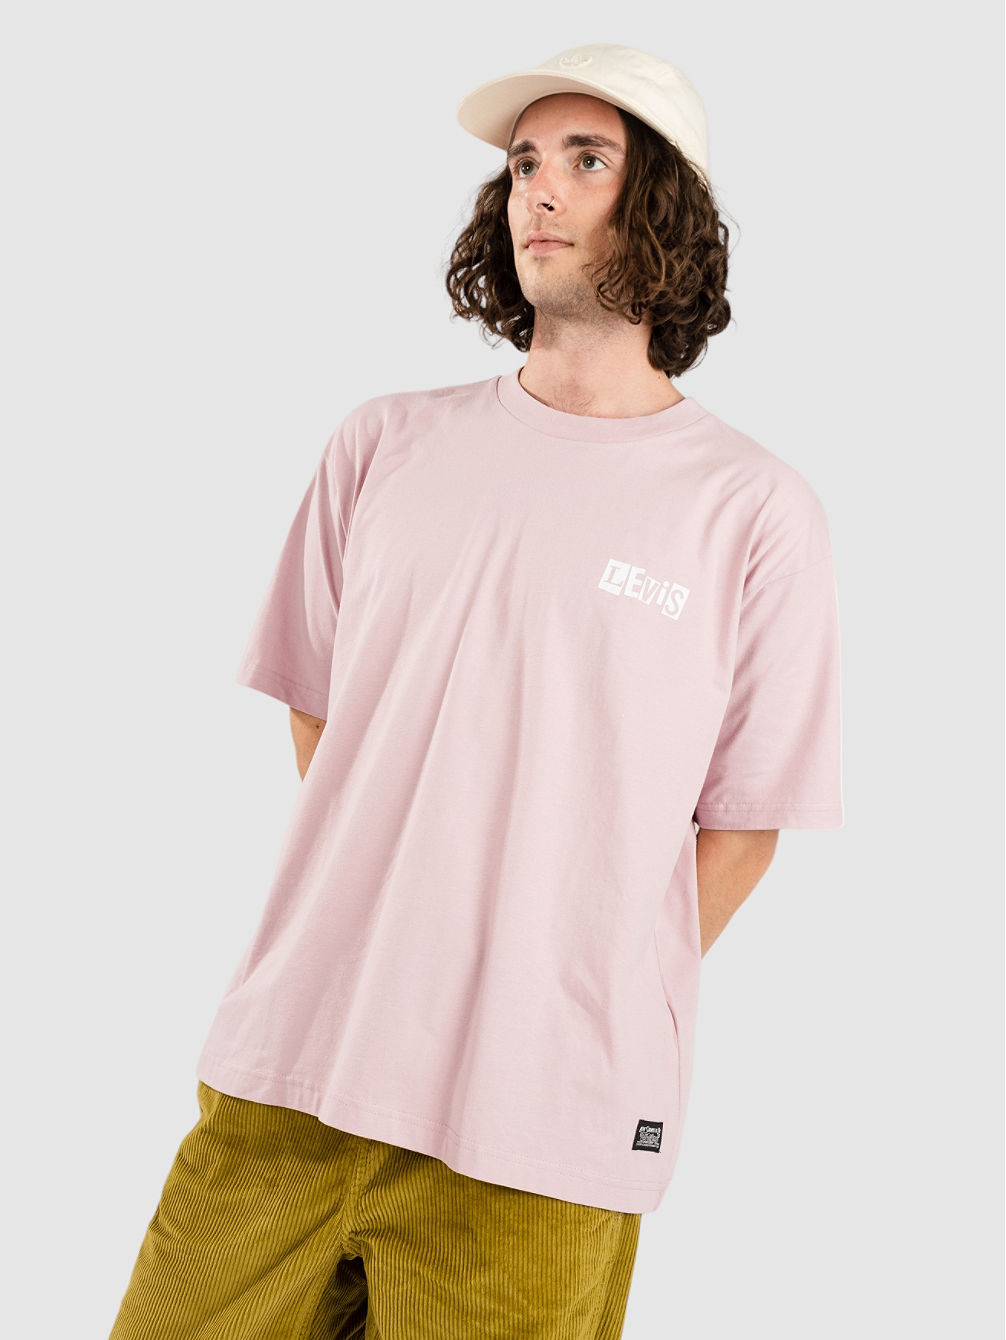 Skate Graphic Box Camiseta